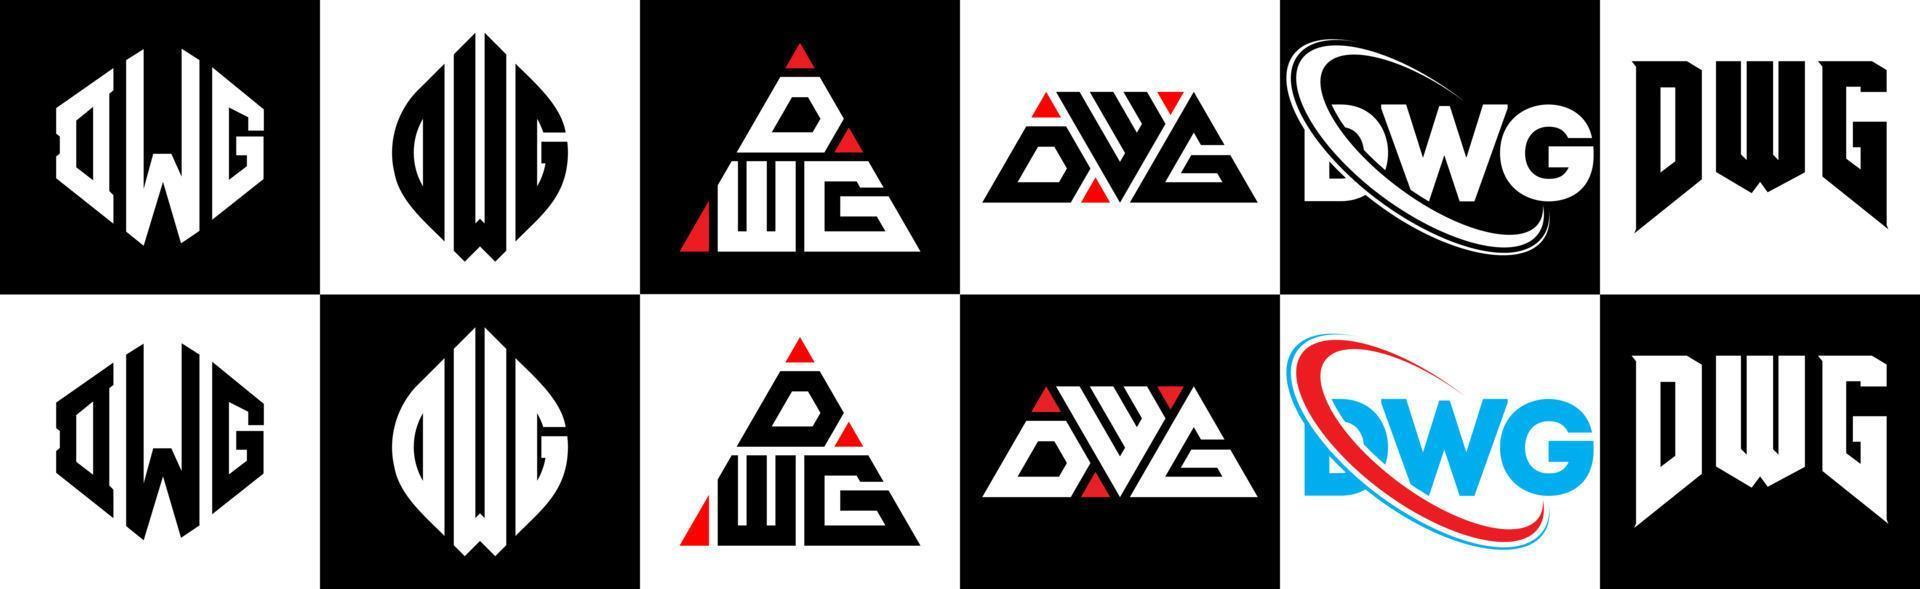 dwg brief logo ontwerp in zes stijl. dwg veelhoek, cirkel, driehoek, zeshoek, vlak en gemakkelijk stijl met zwart en wit kleur variatie brief logo reeks in een tekengebied. dwg minimalistische en klassiek logo vector